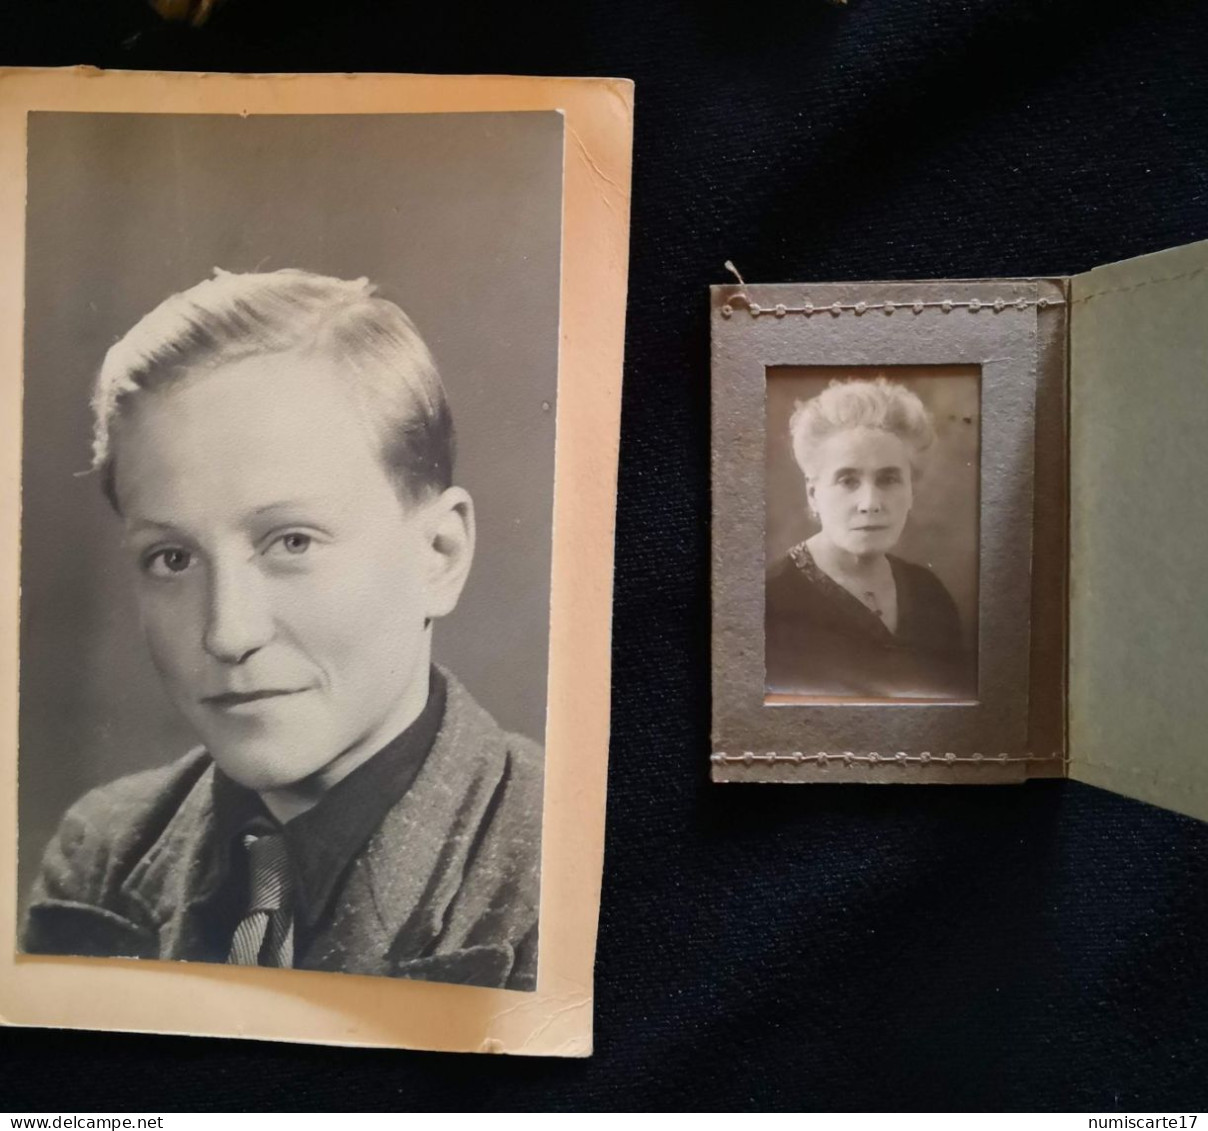 Généalogie : Album photos de la famille HENTGEN - PILLET de Paris années 40-50